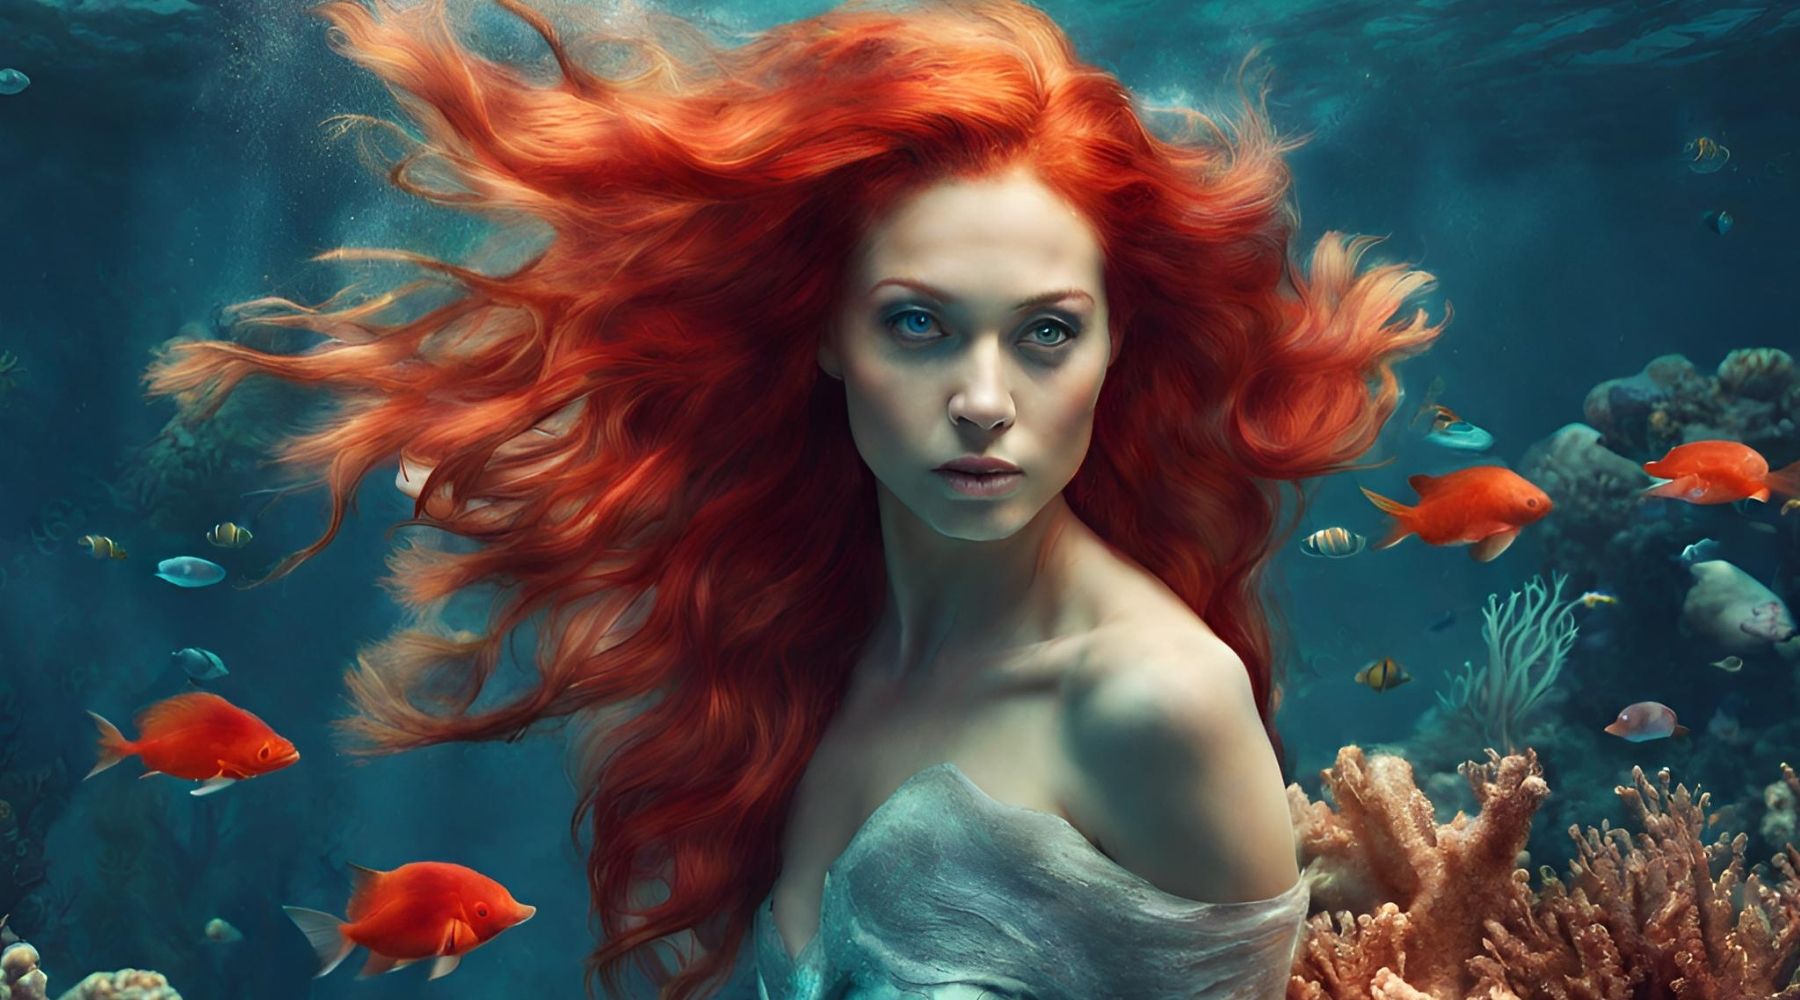 red headed mermaid under water